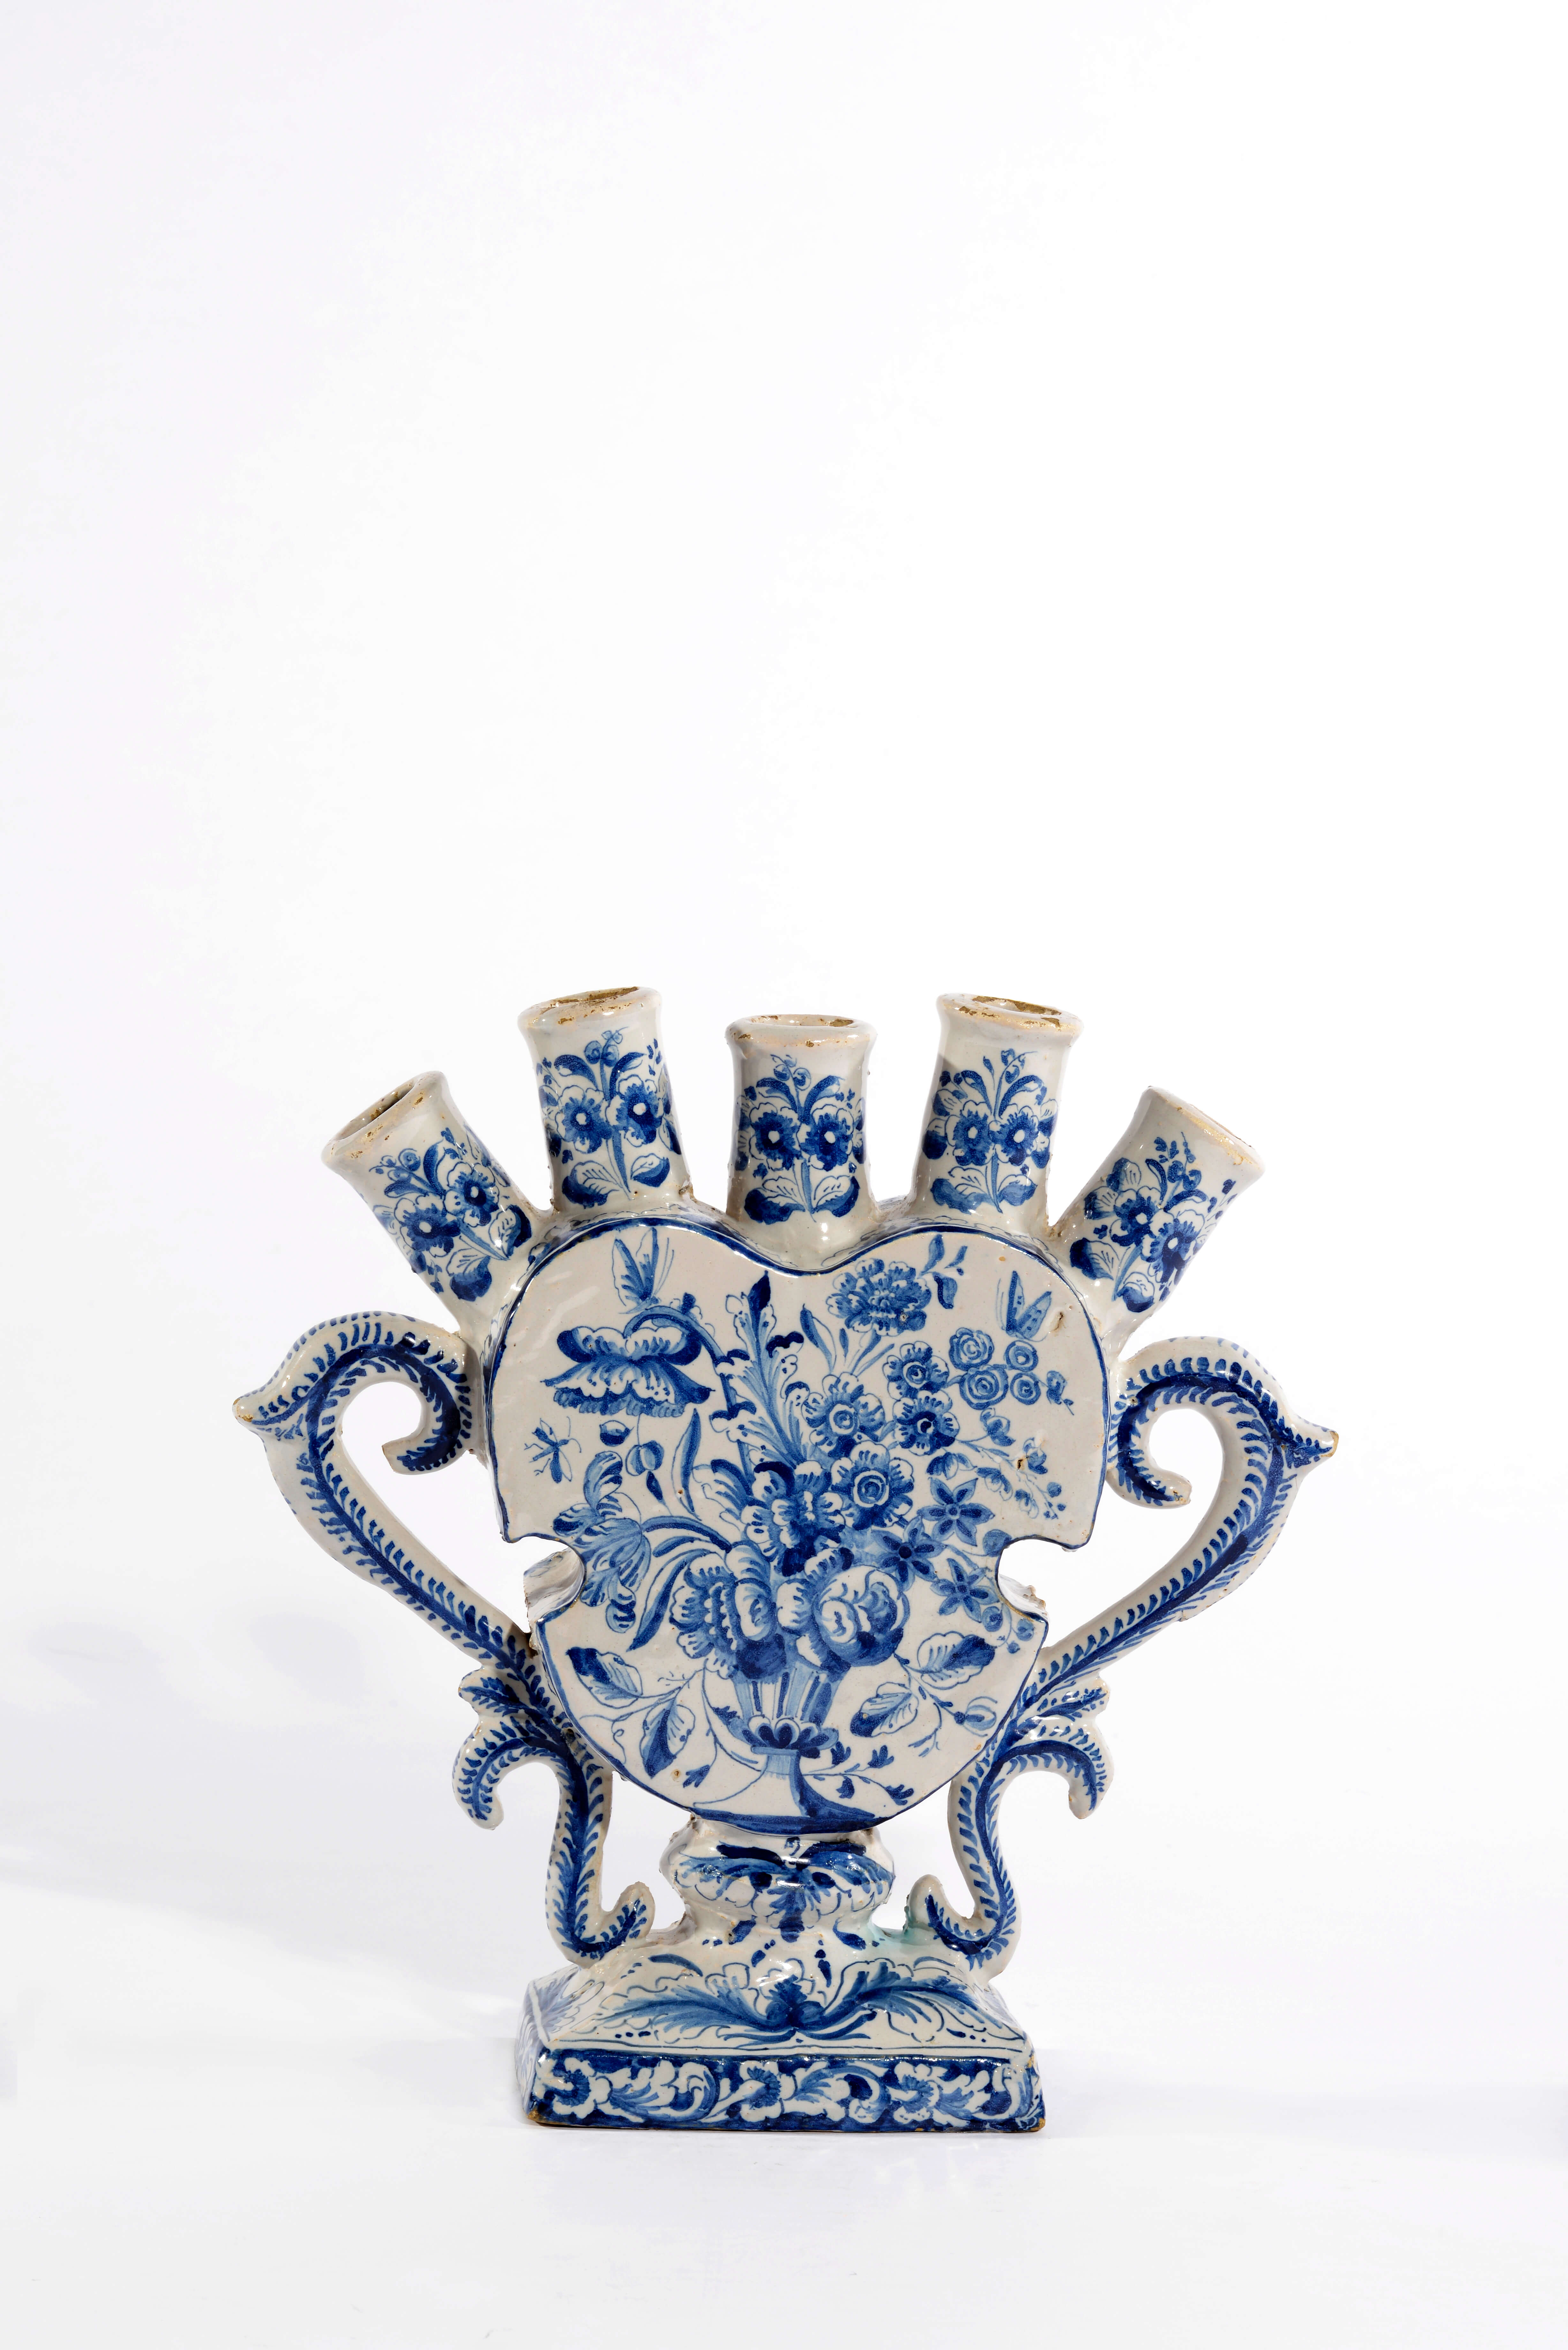 1644 Blue and White Flower Vase